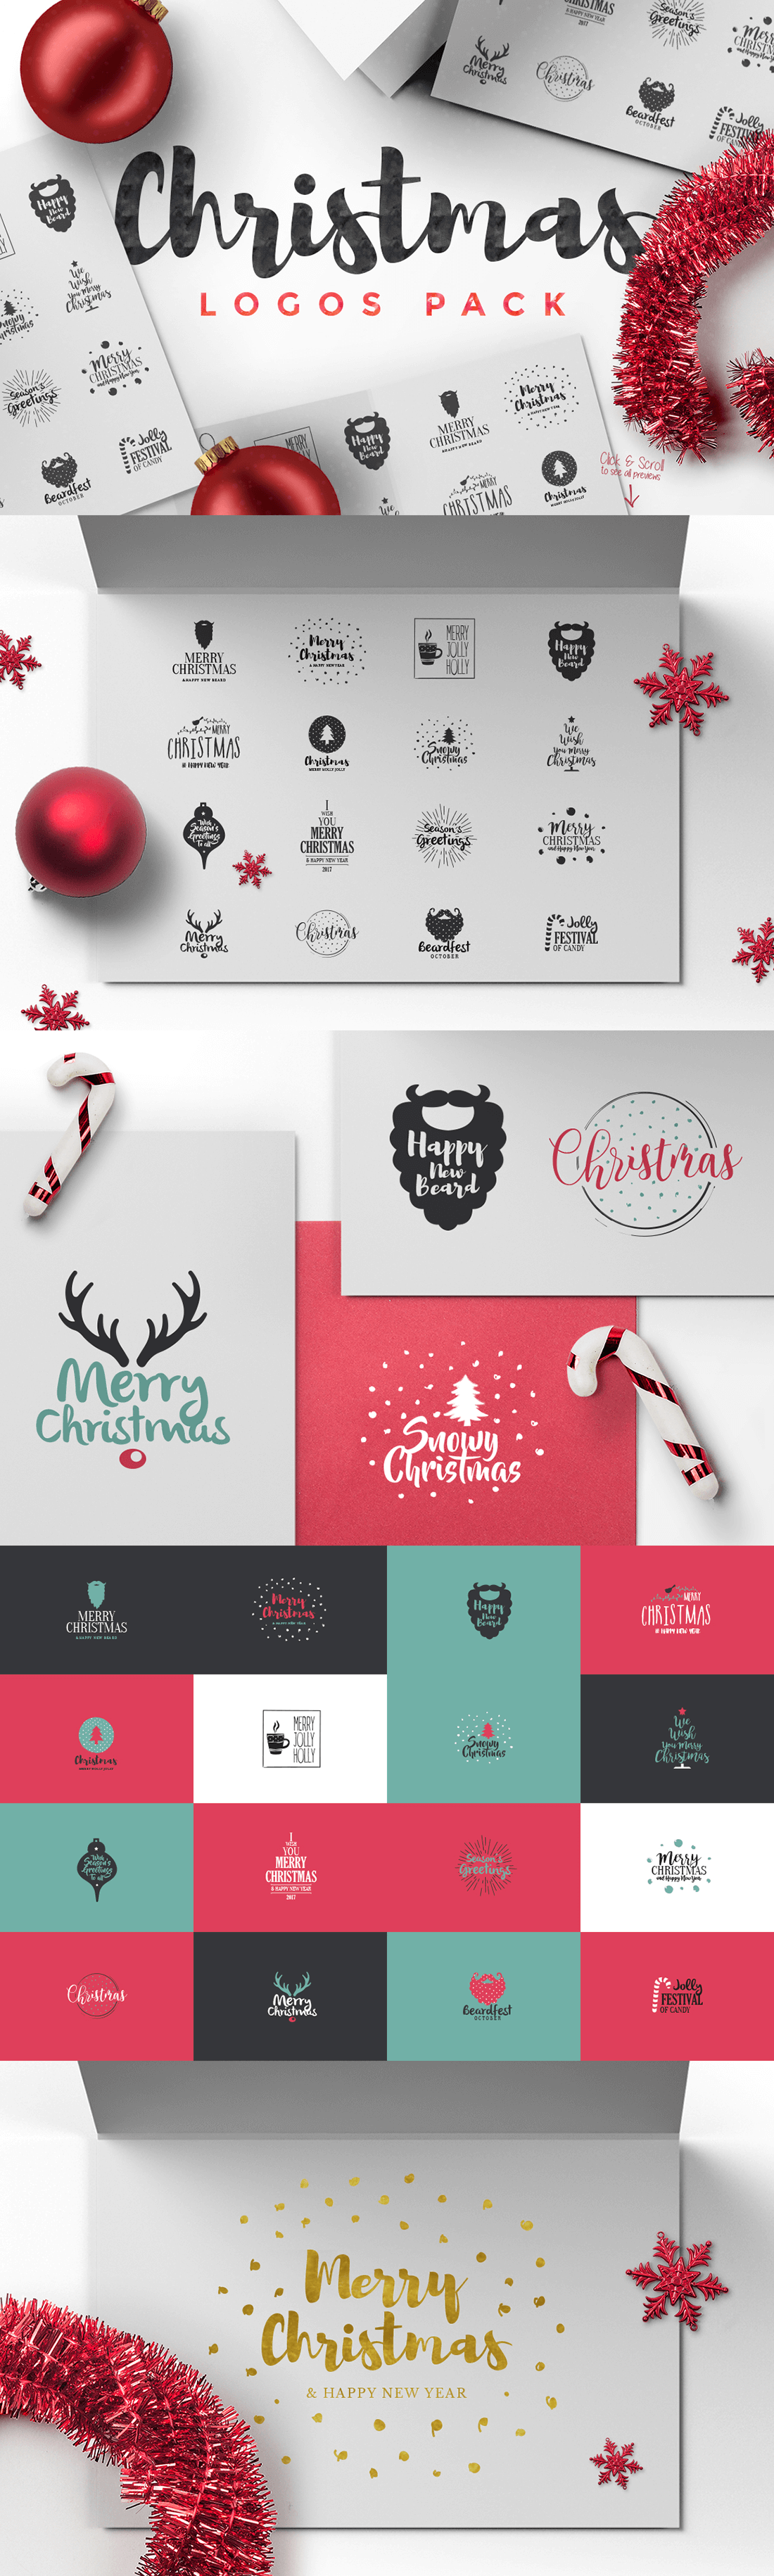 圣诞特典：400+圣诞主题设计素材包 Christmas Bundle 2016（2.35GB, AI, EPS, PSD 格式）插图